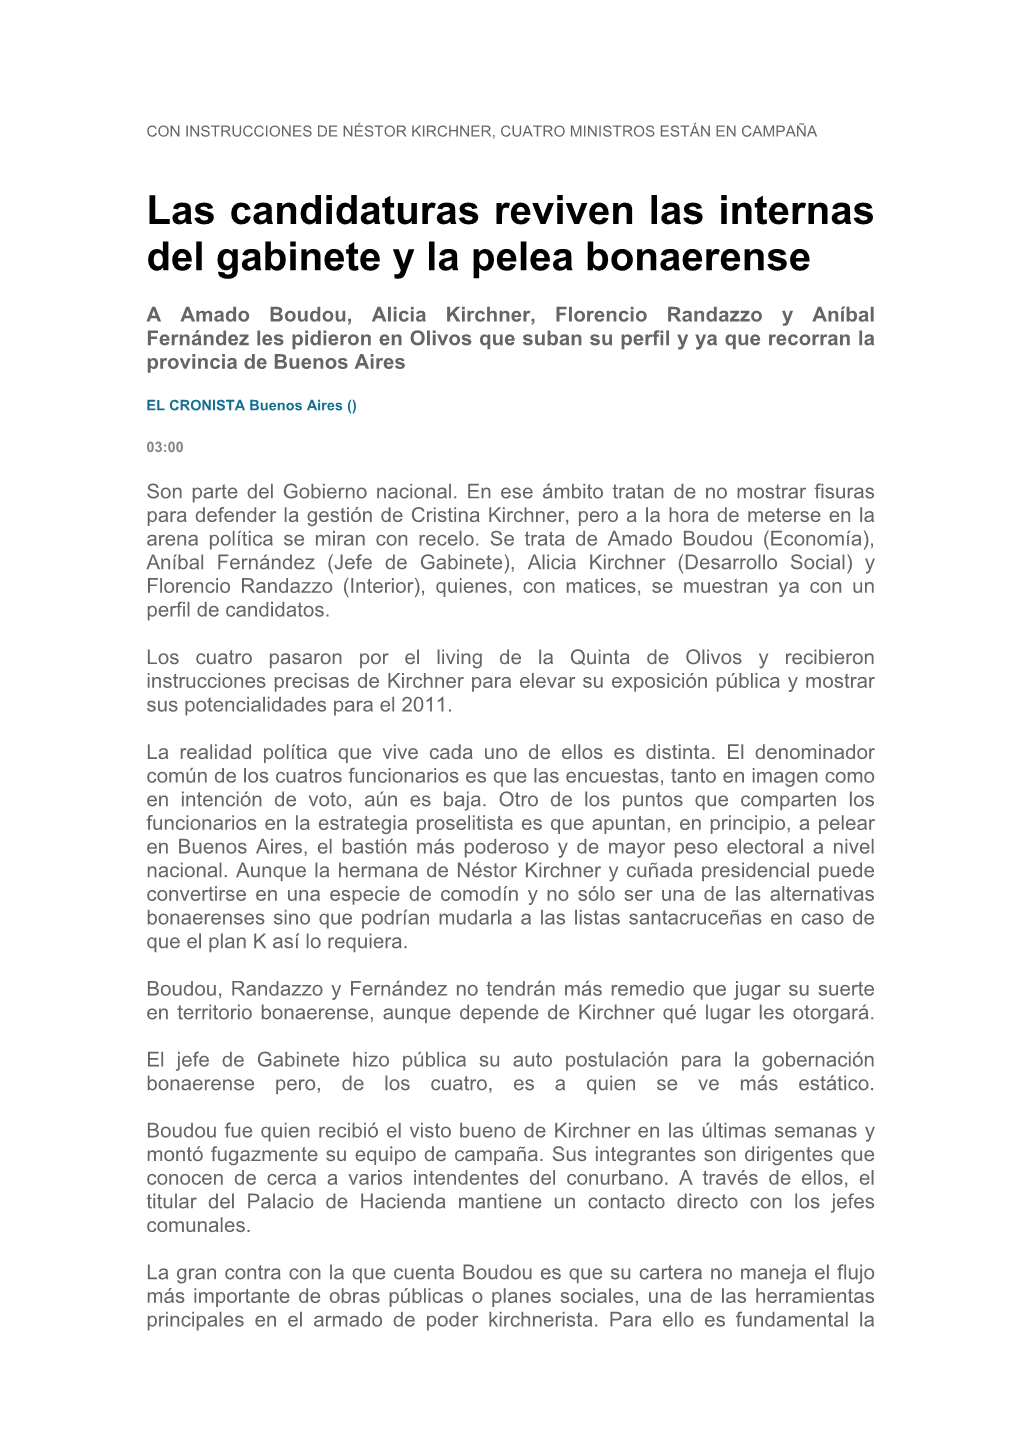 Las Candidaturas Reviven Las Internas Del Gabinete Y La Pelea Bonaerense